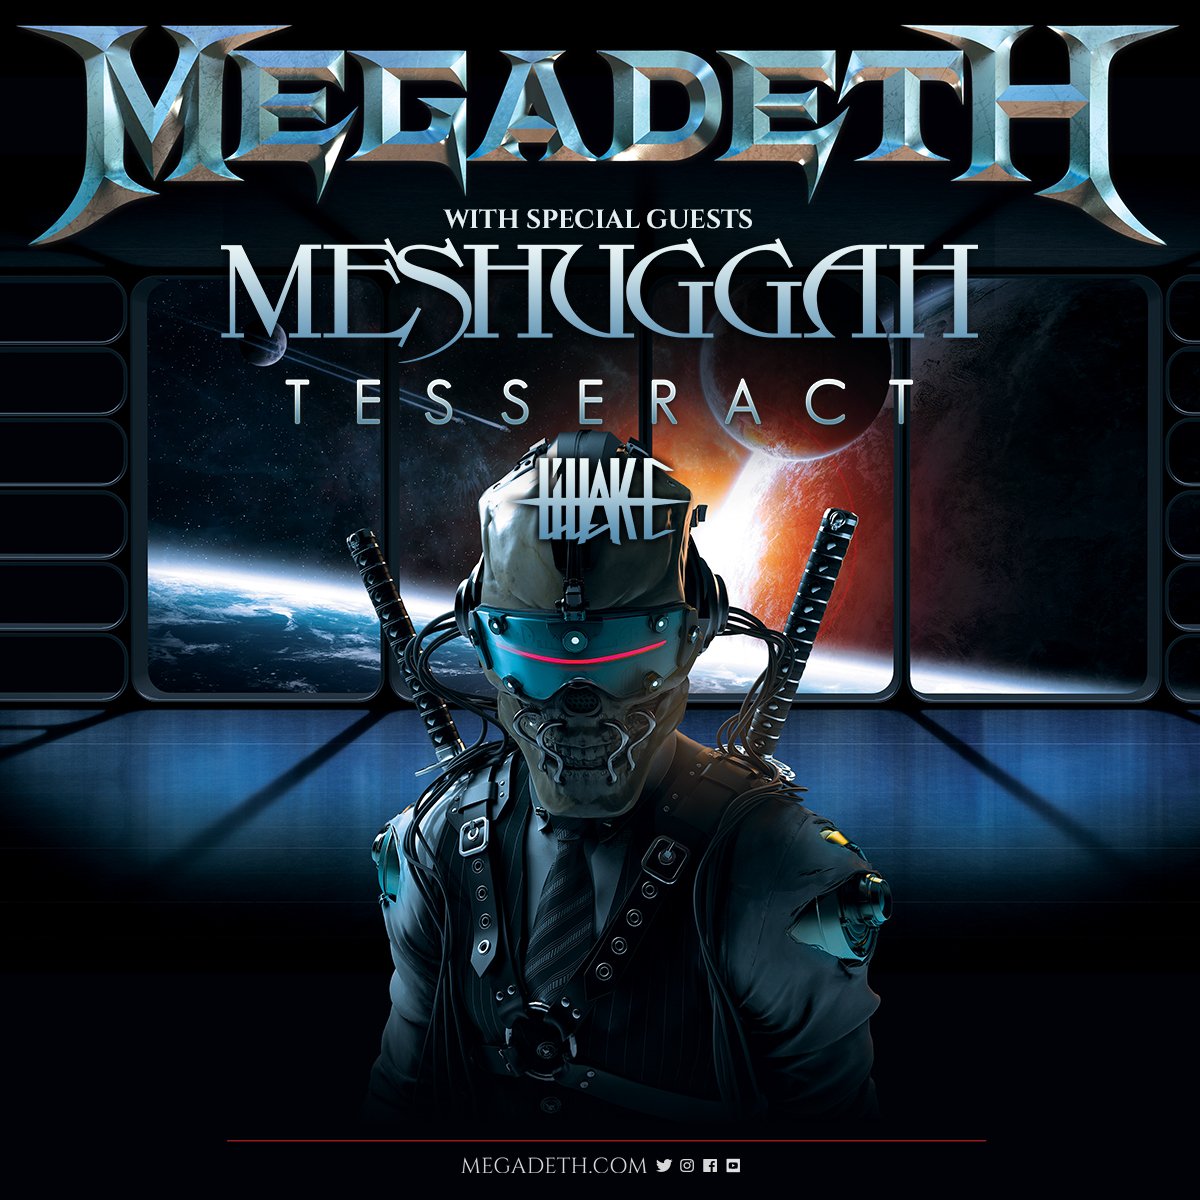 Megadeth on Twitter "Fan club presale tickets for Cincinnati